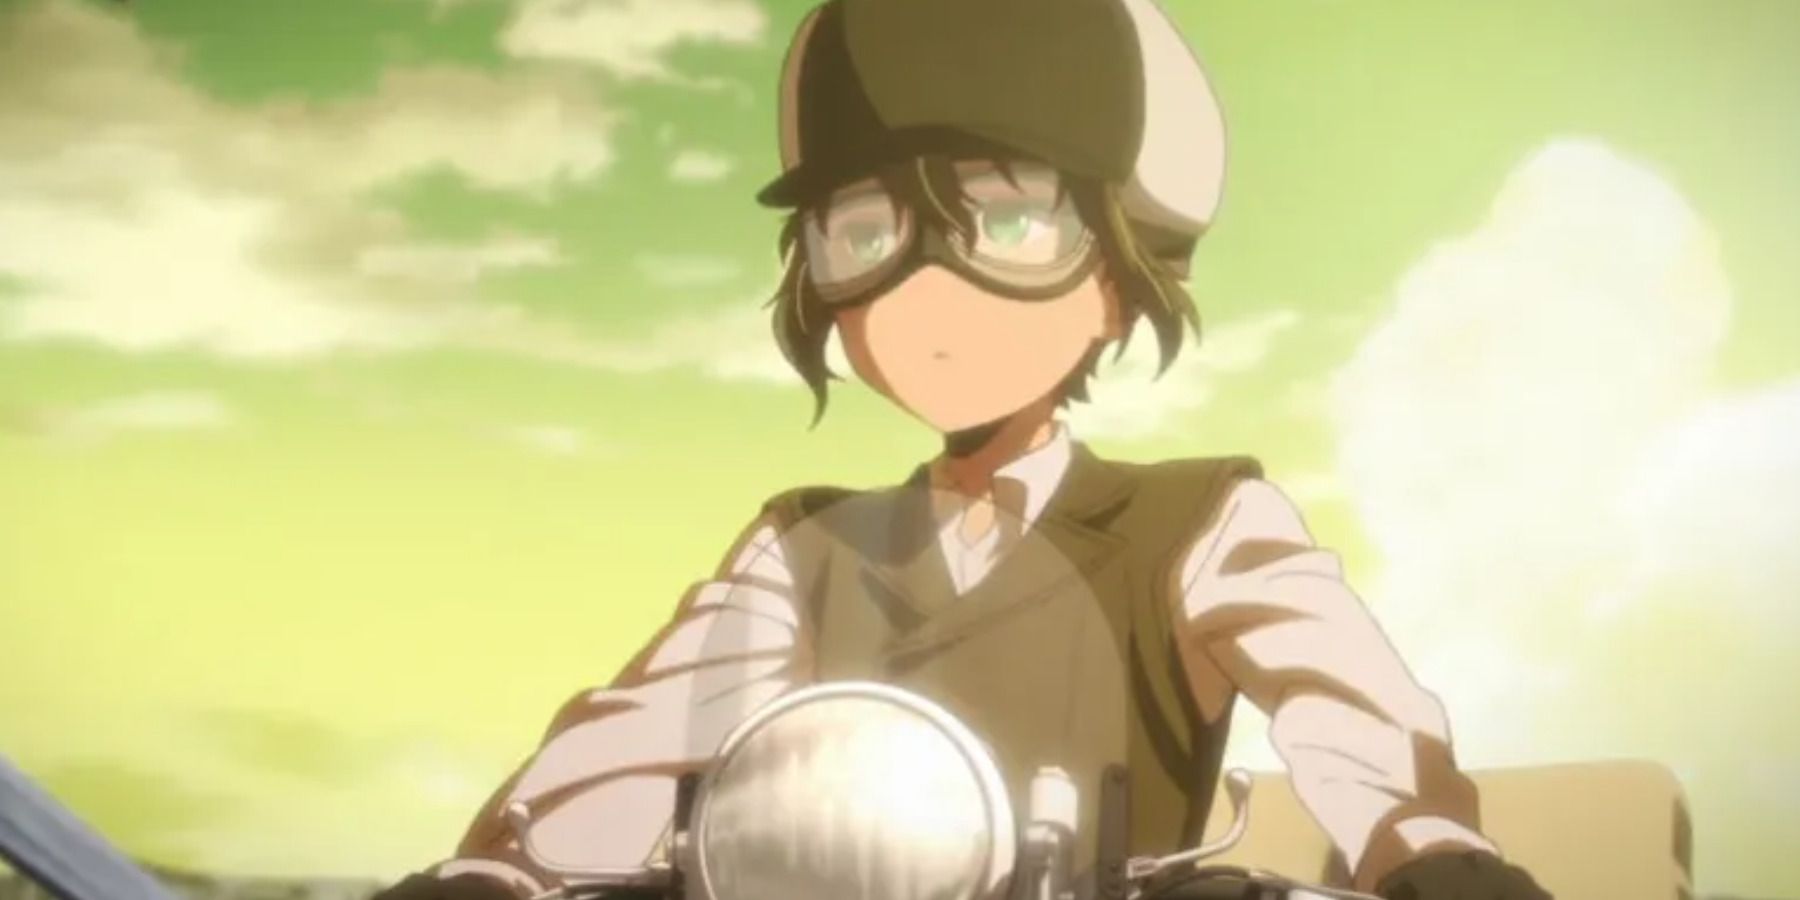 anime little boy - Buscar con Google | Anime